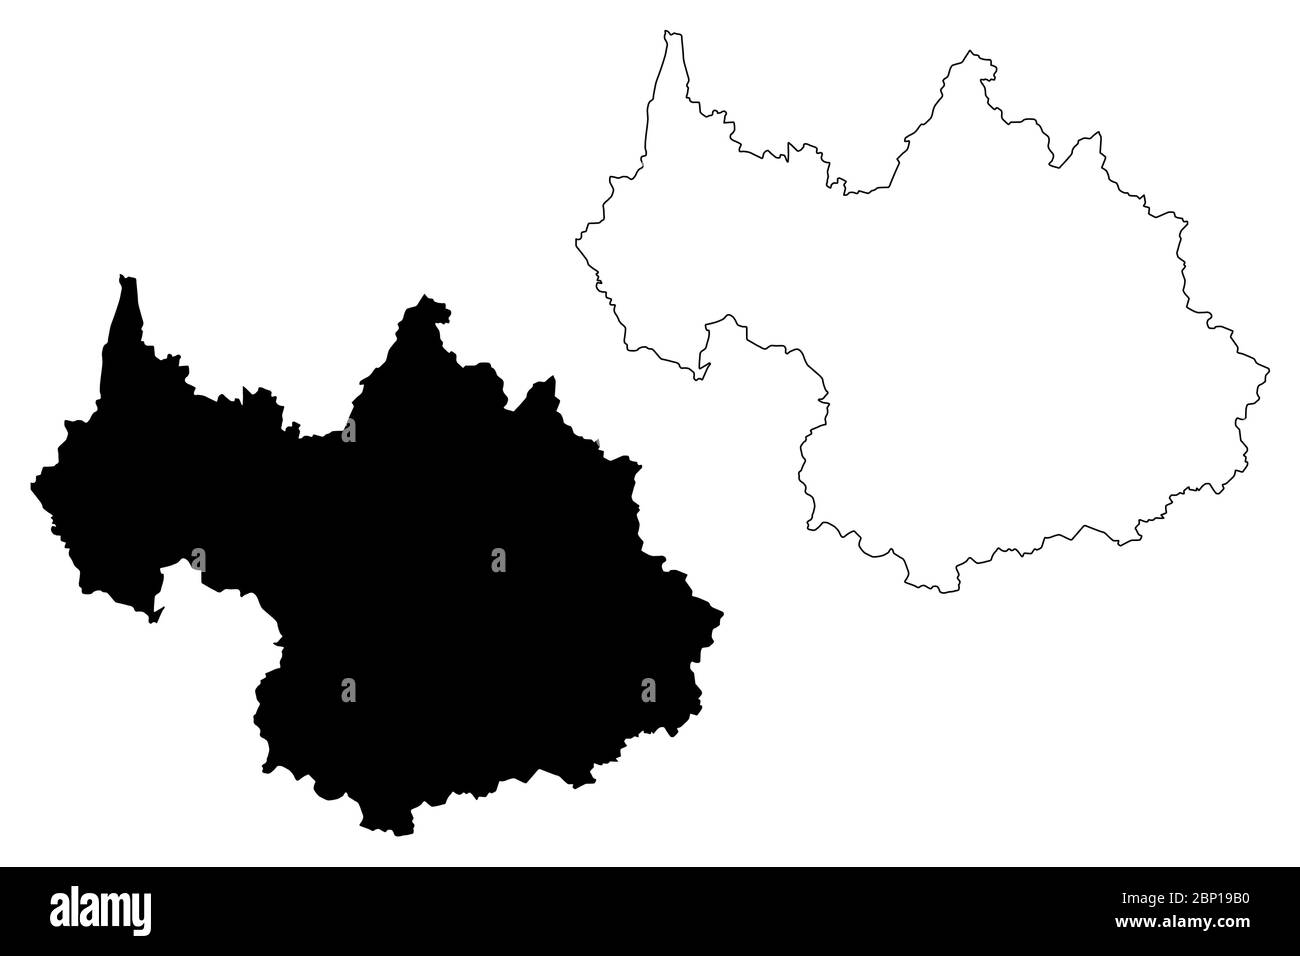 Département Savoie (Frankreich, Frankreich, Republik Frankreich, Region Auvergne-Rhone-Alpes, ARA) Karte Vektorgrafik, Skizze Savoie Karte Stock Vektor